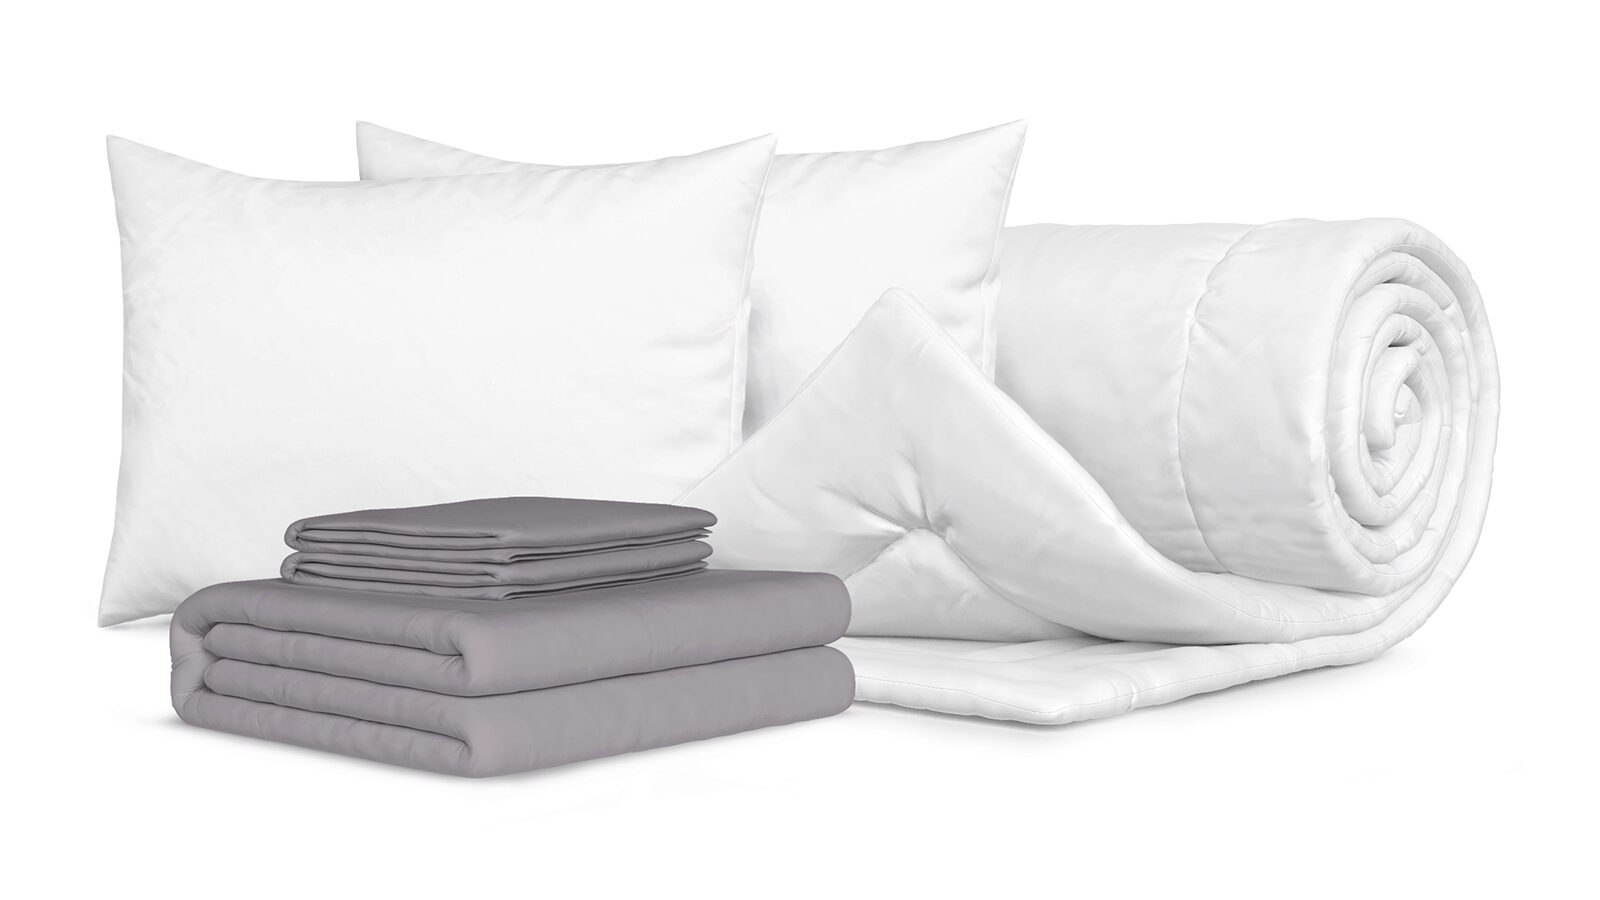 Комплект Одеяло Beat + 2 Подушка Sky + Комплект постельного белья Comfort Cotton, цвет: Светло-серый